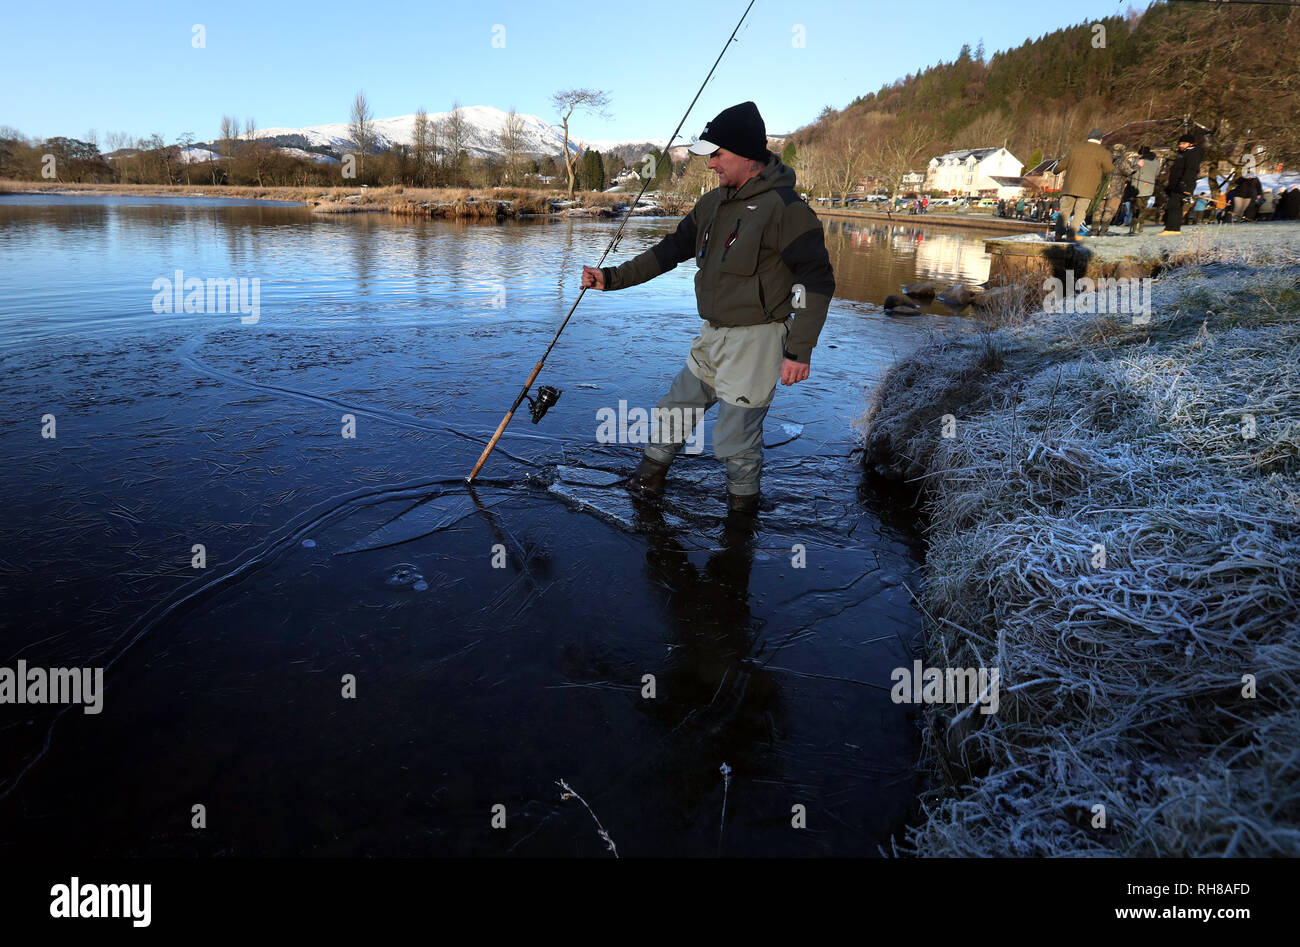 Gary Clark se brise la glace sur la rivière Teith à Callander, près de Stirling, le jour de l'ouverture de la saison de pêche du conseil de Stirling. Banque D'Images